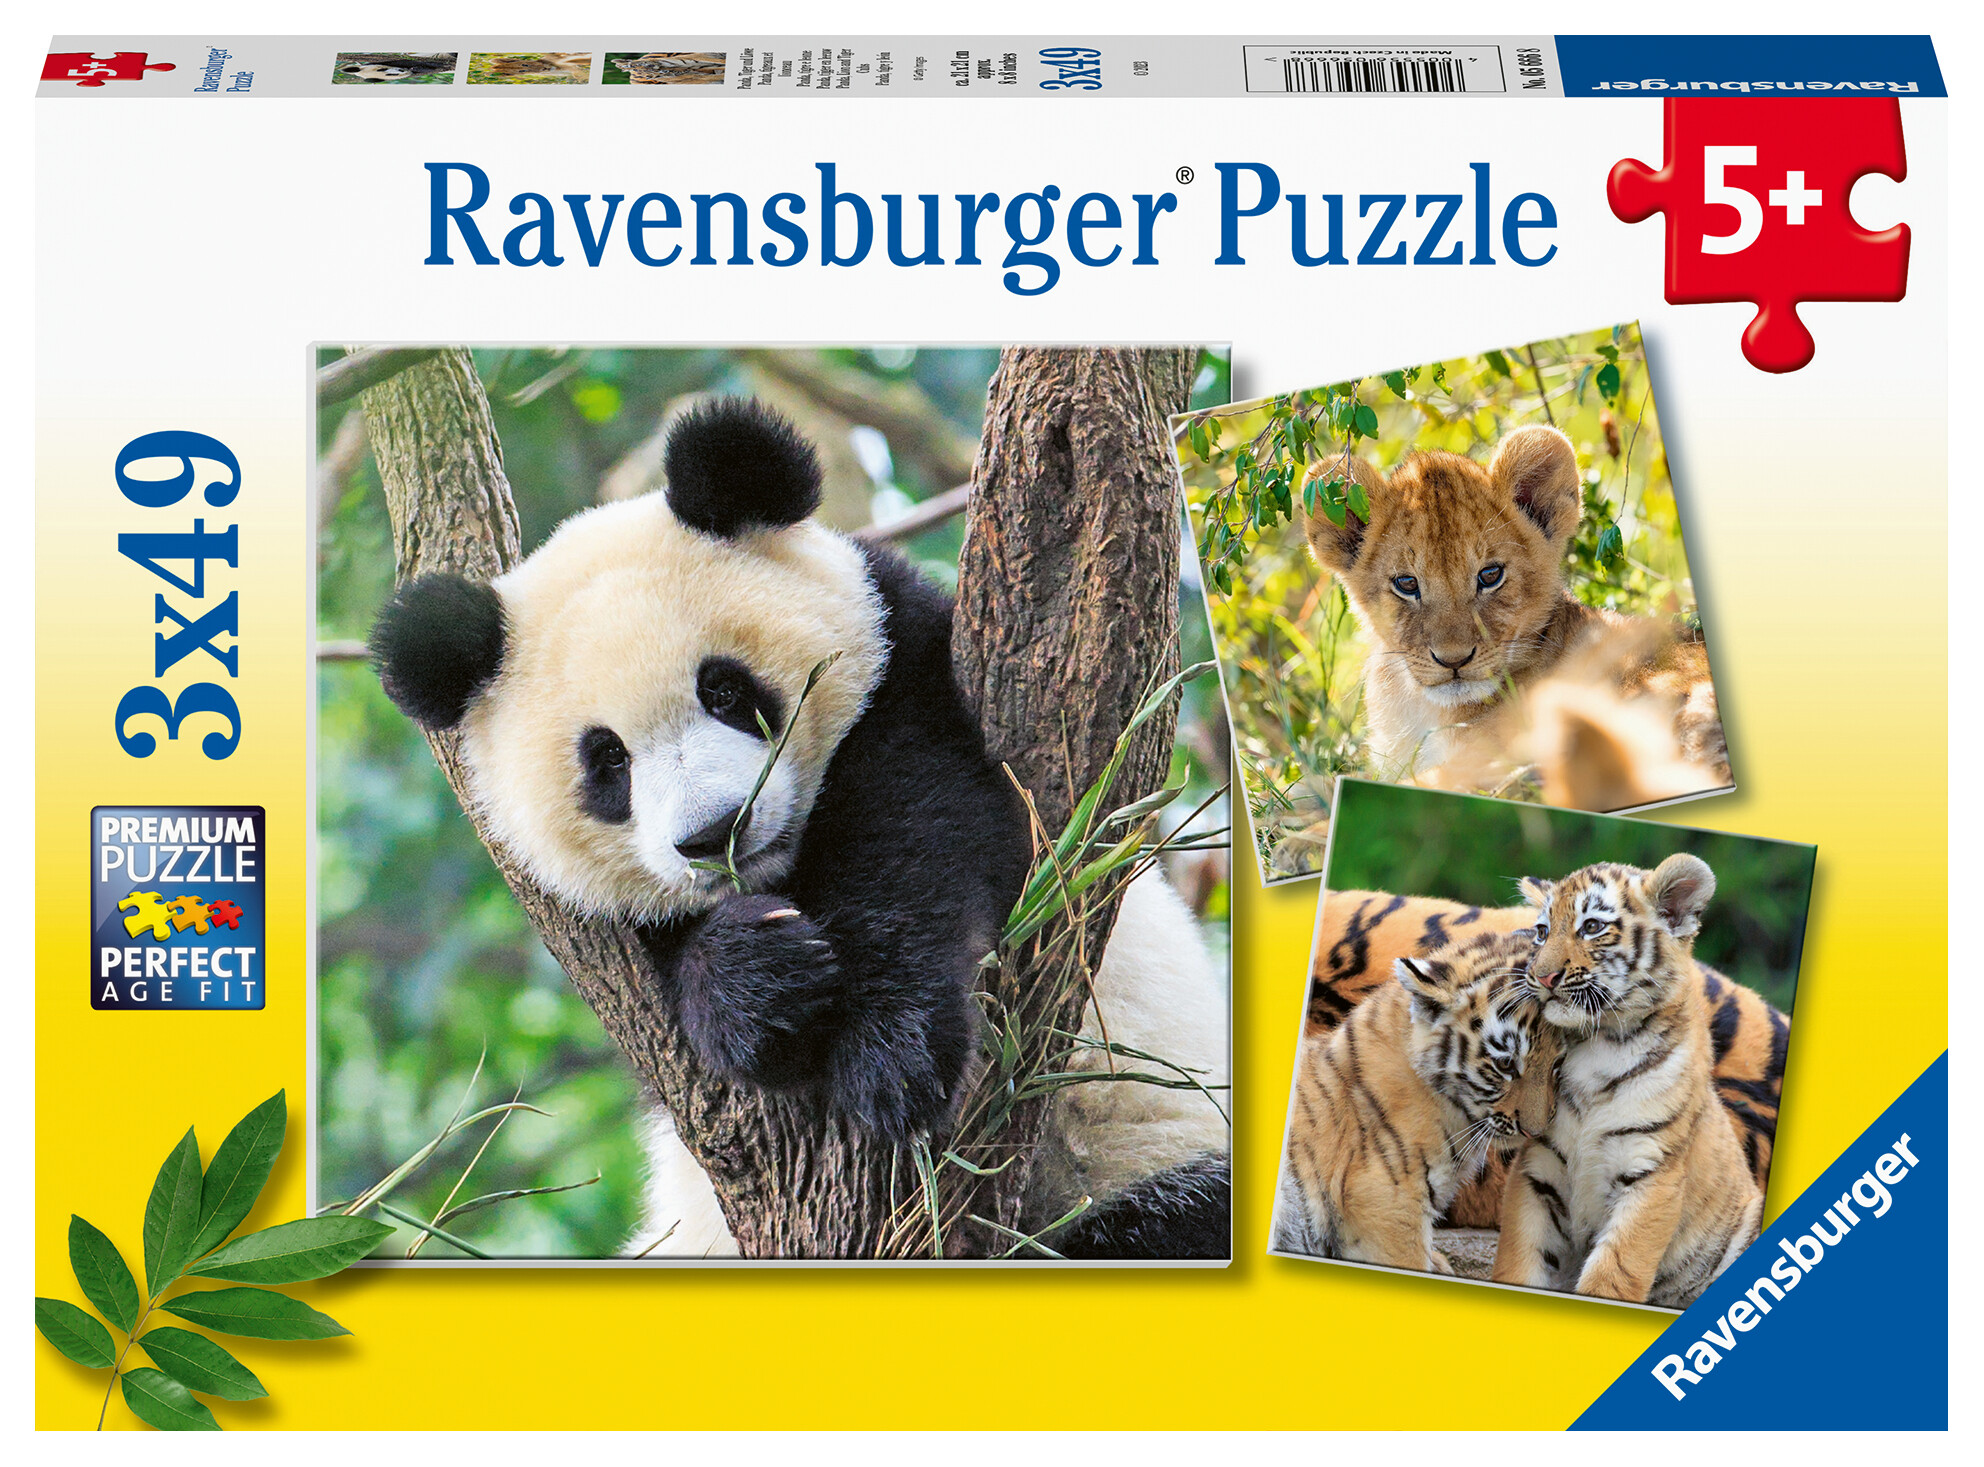 Ravensburger - puzzle panda, tigre e leone, collezione 3x49, 3 puzzle da 49 pezzi, età raccomandata 5+ anni - RAVENSBURGER